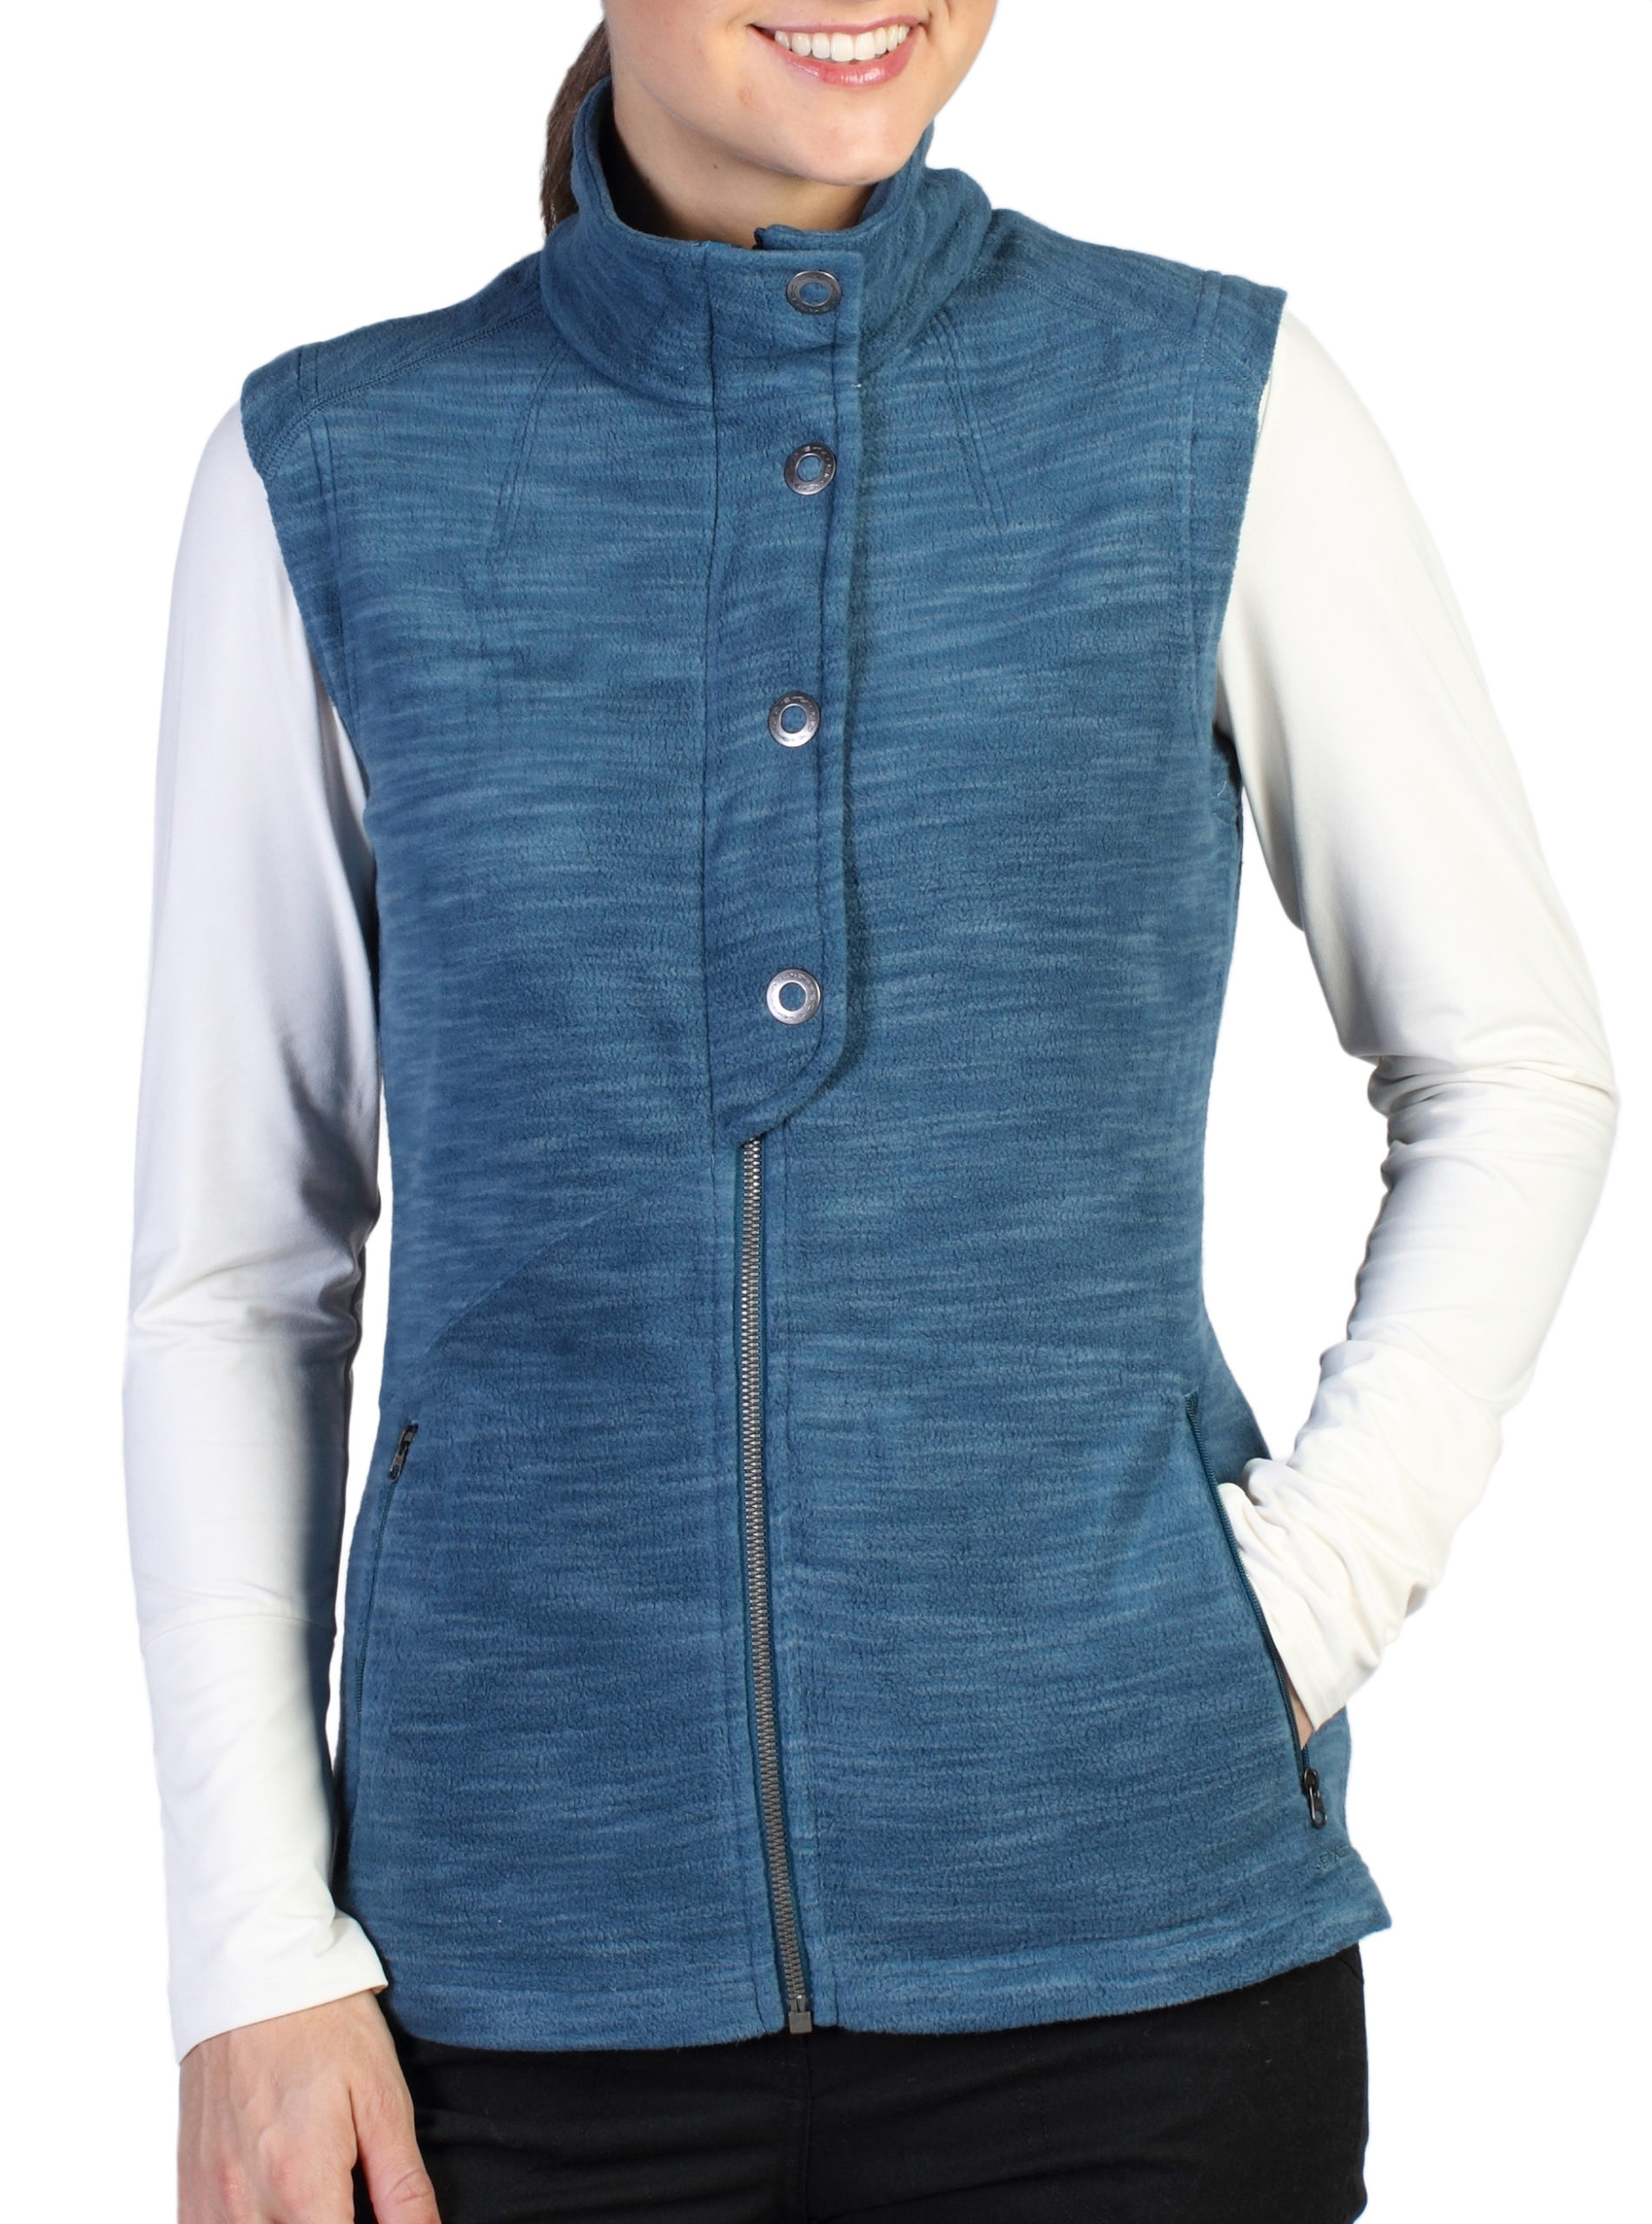 Calluna fleece vest from Ex-Officio